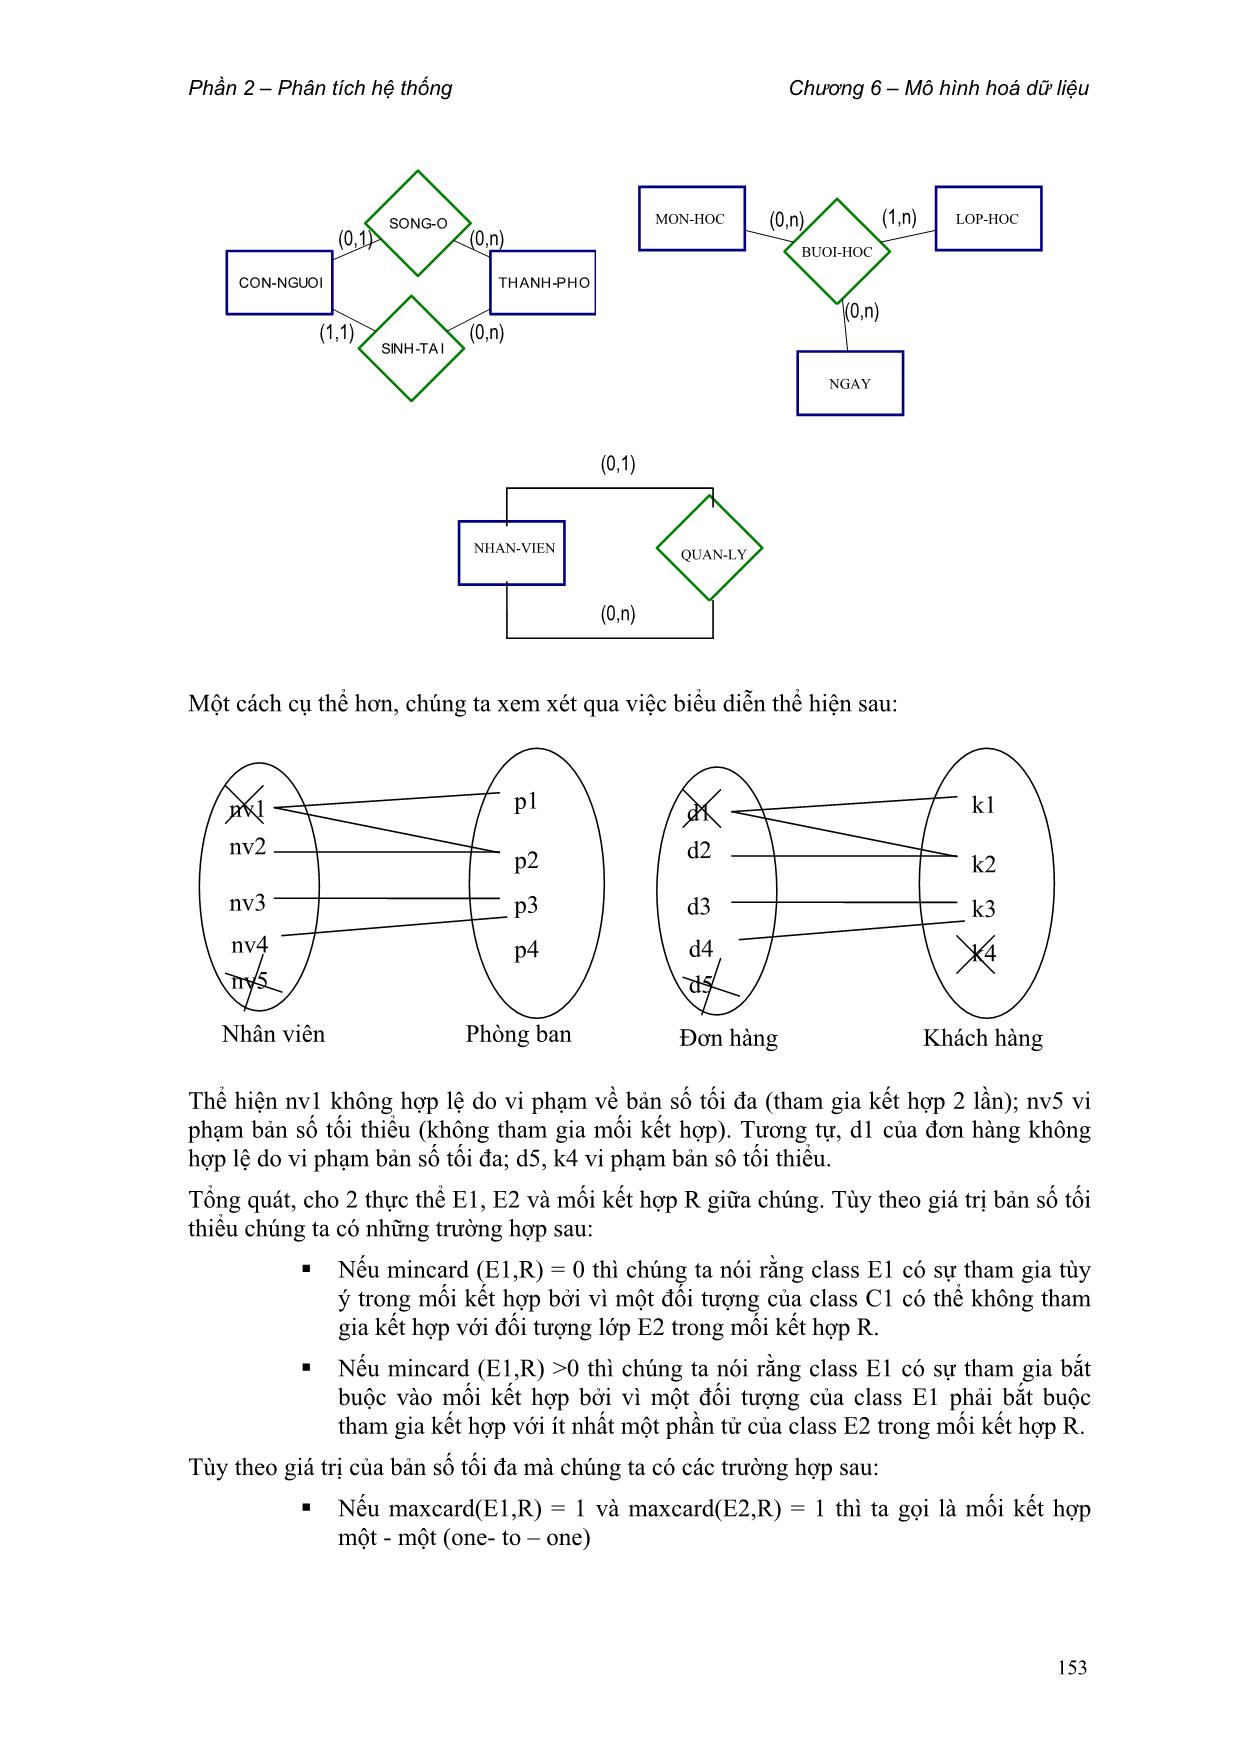 Giáo trình Phân tích thiết kế hệ thống thông tin (Phần 2) trang 6